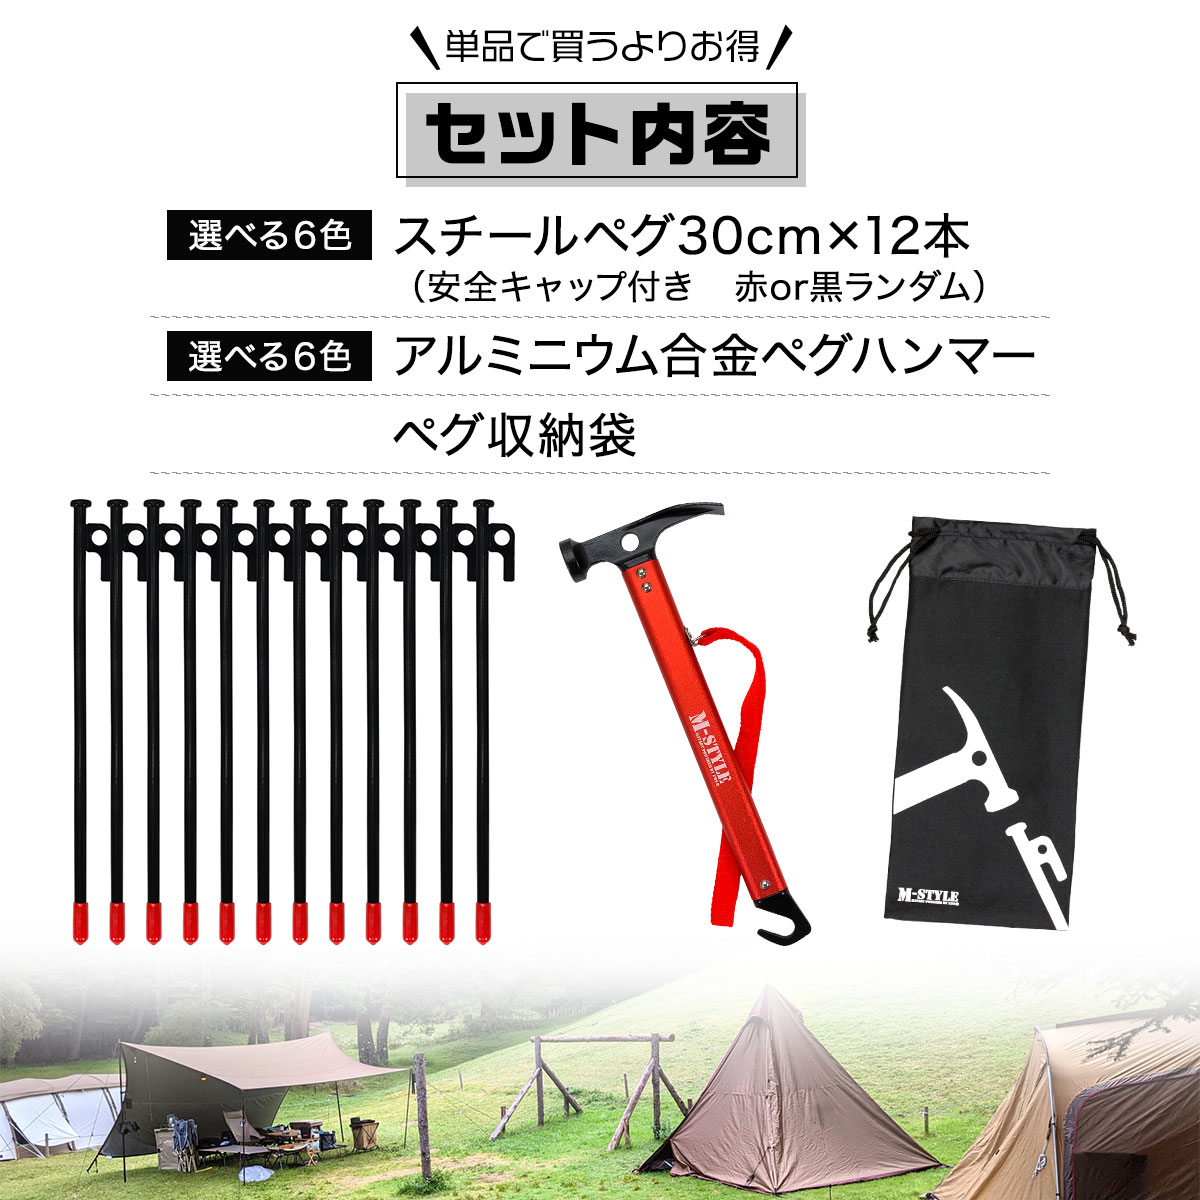 日本初の ペグケース ペグハンマー収納袋 テント 入れ キャンプ アウトドア 登山 タープ